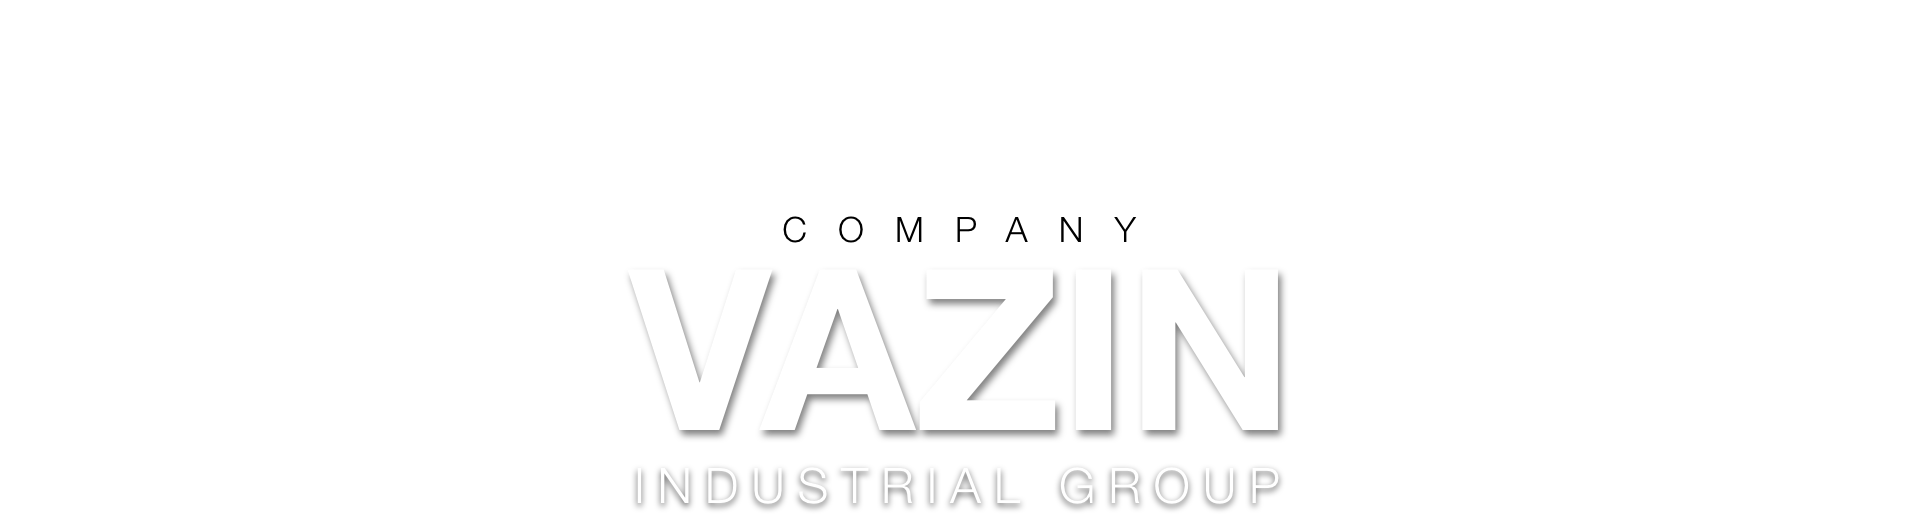 Vazin Industrial Group